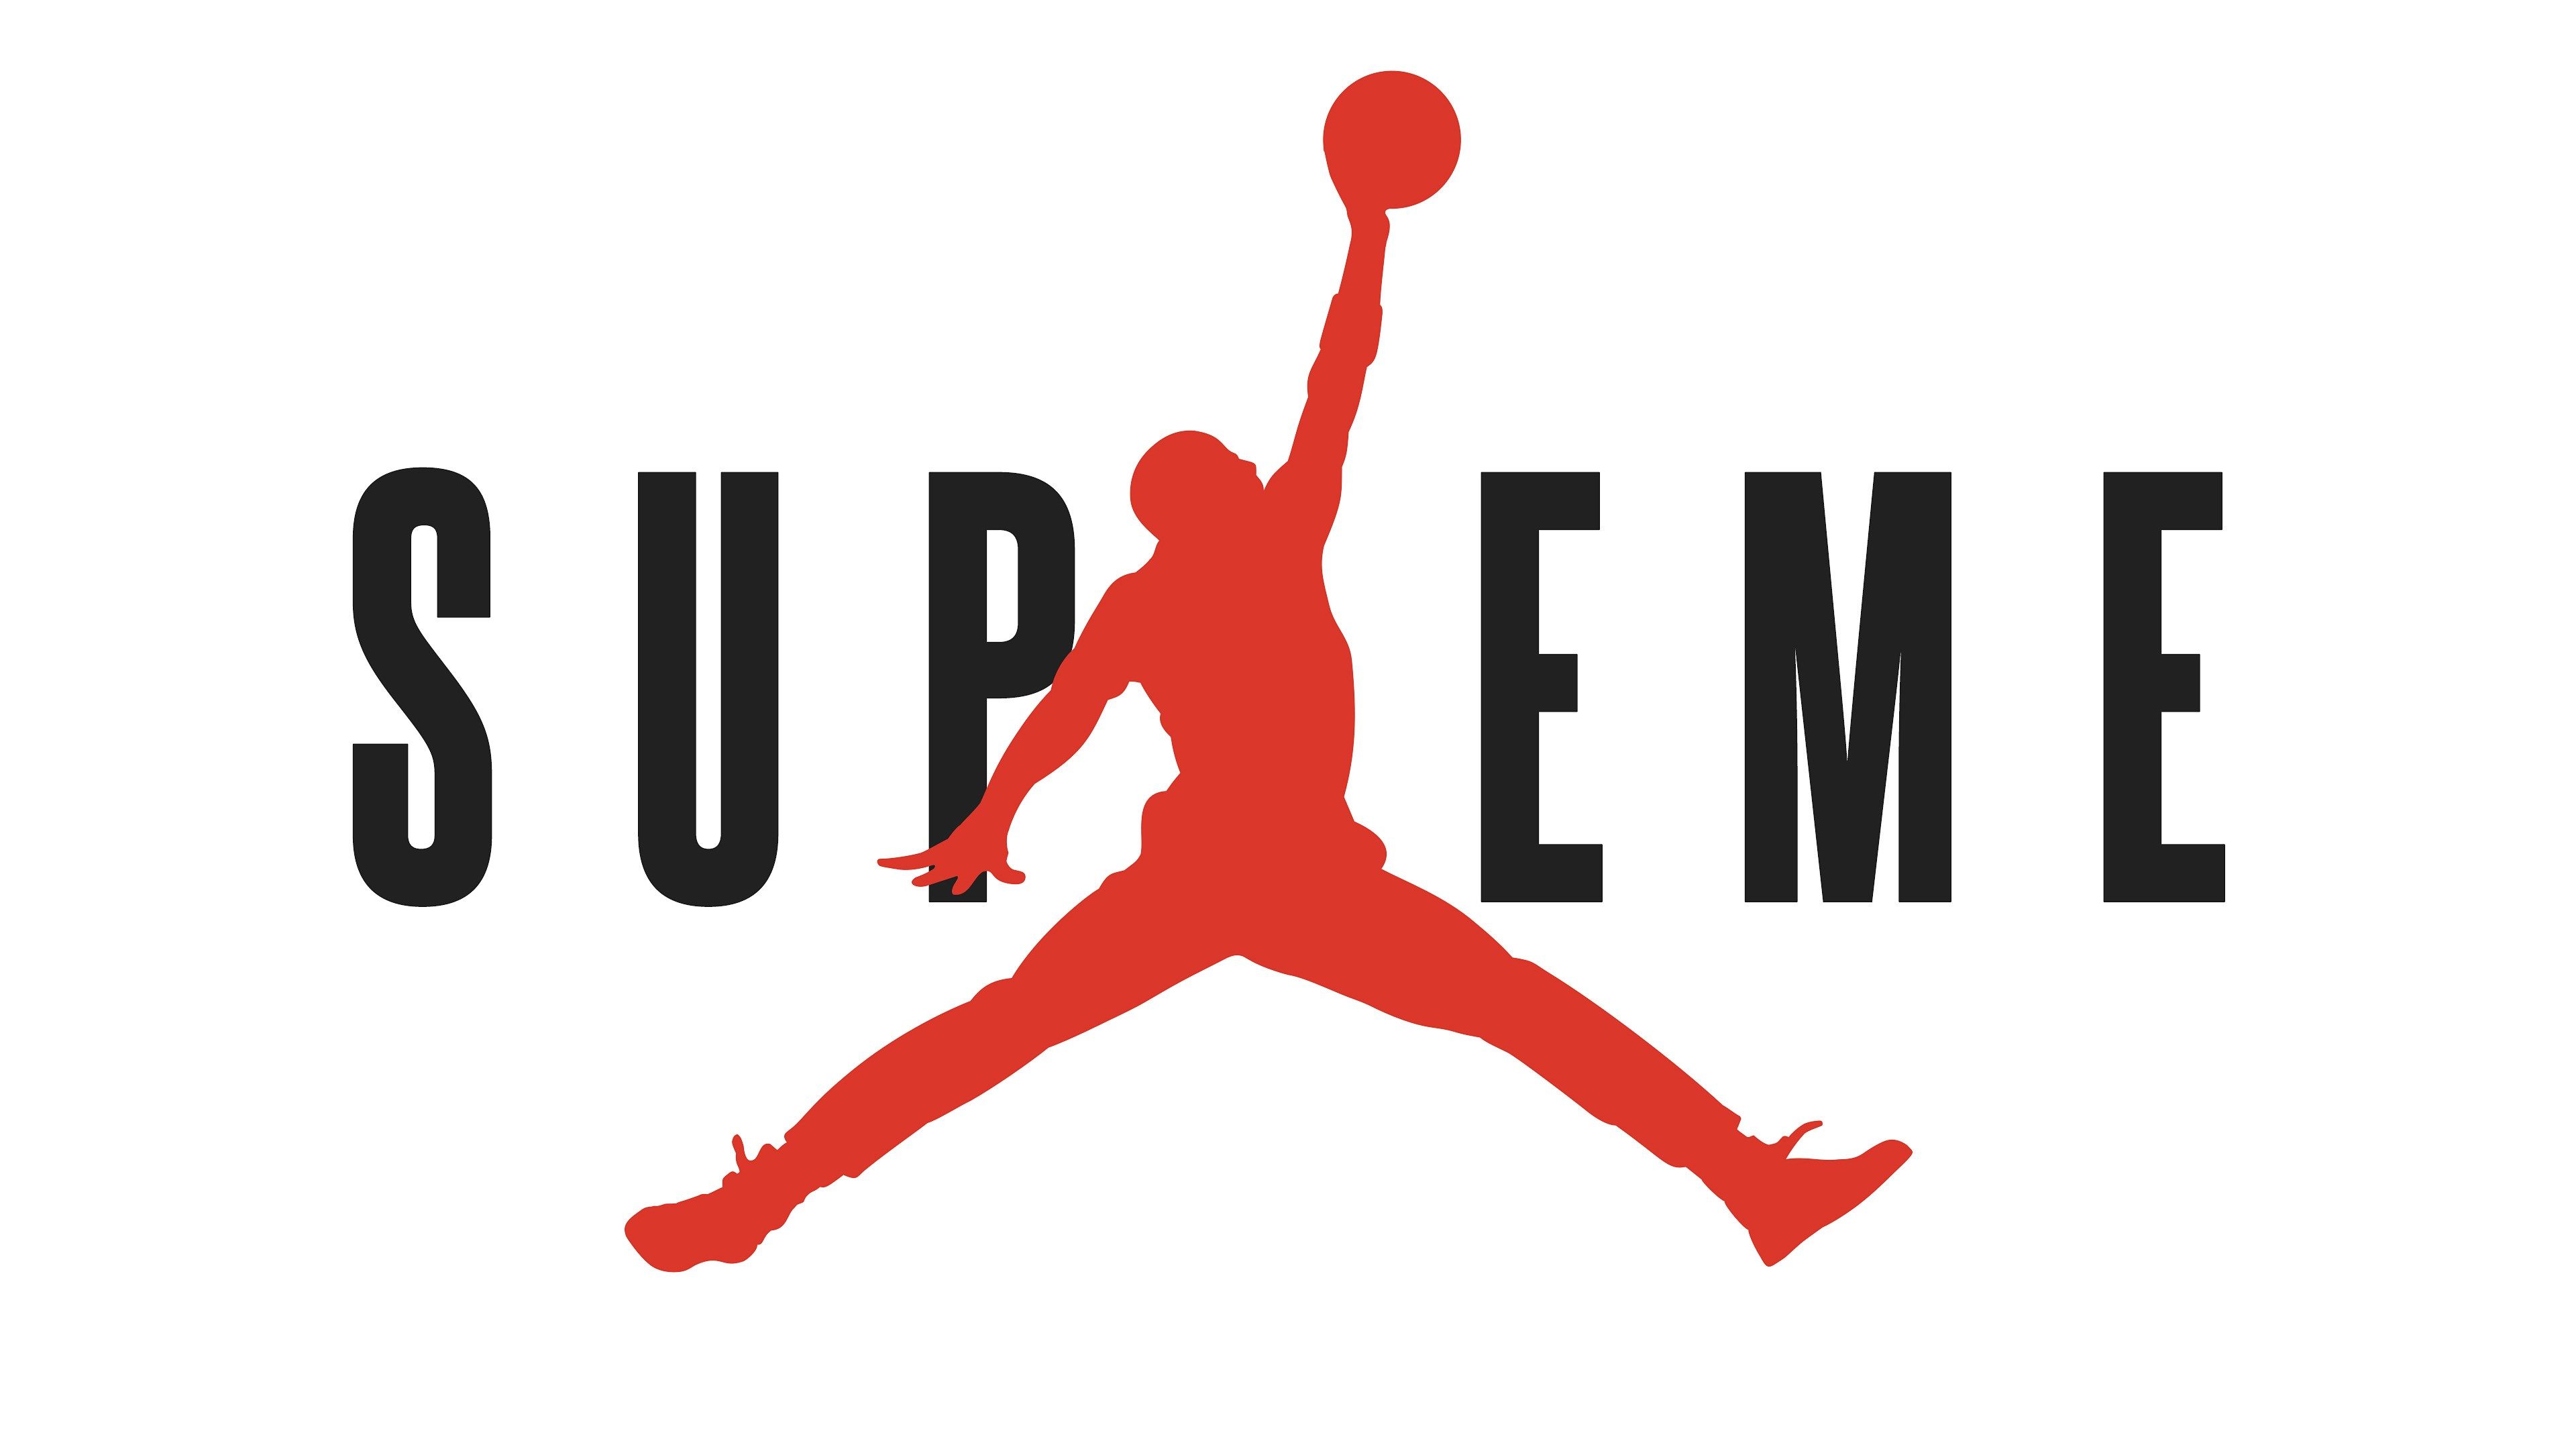 höchste logo tapete hd,volleyballspieler,einen ball werfen,basketball spieler,schriftart,basketball